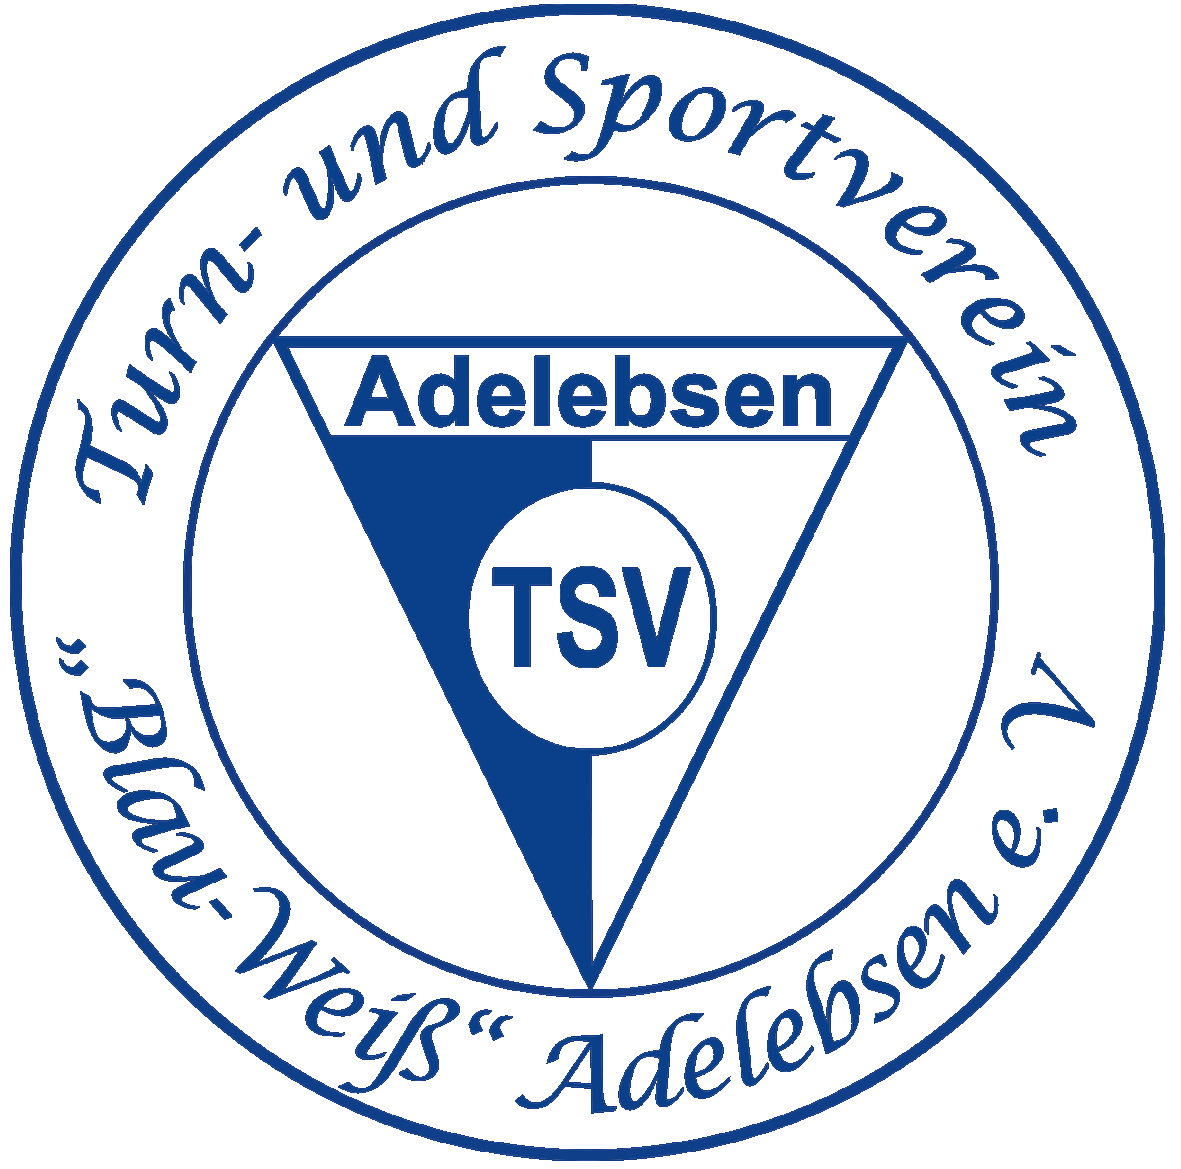 TSV Adelebsen